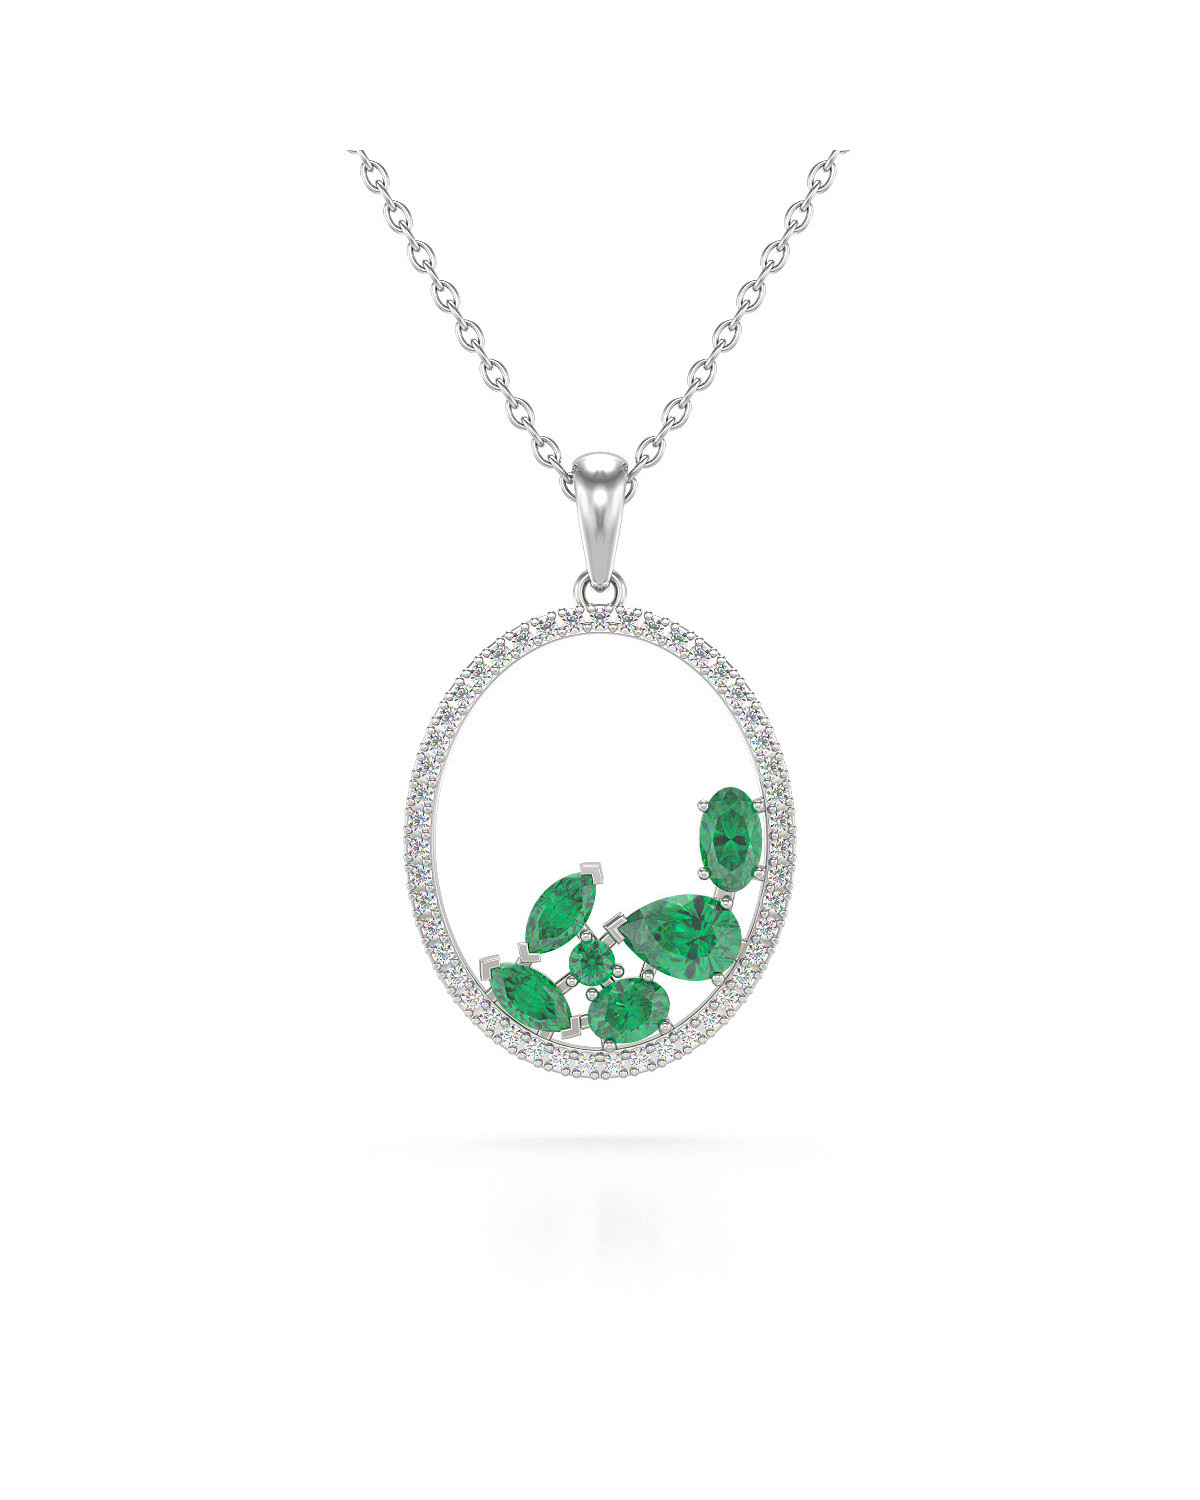 925 Silver Emerald Diamonds Necklace Pendant Chain included